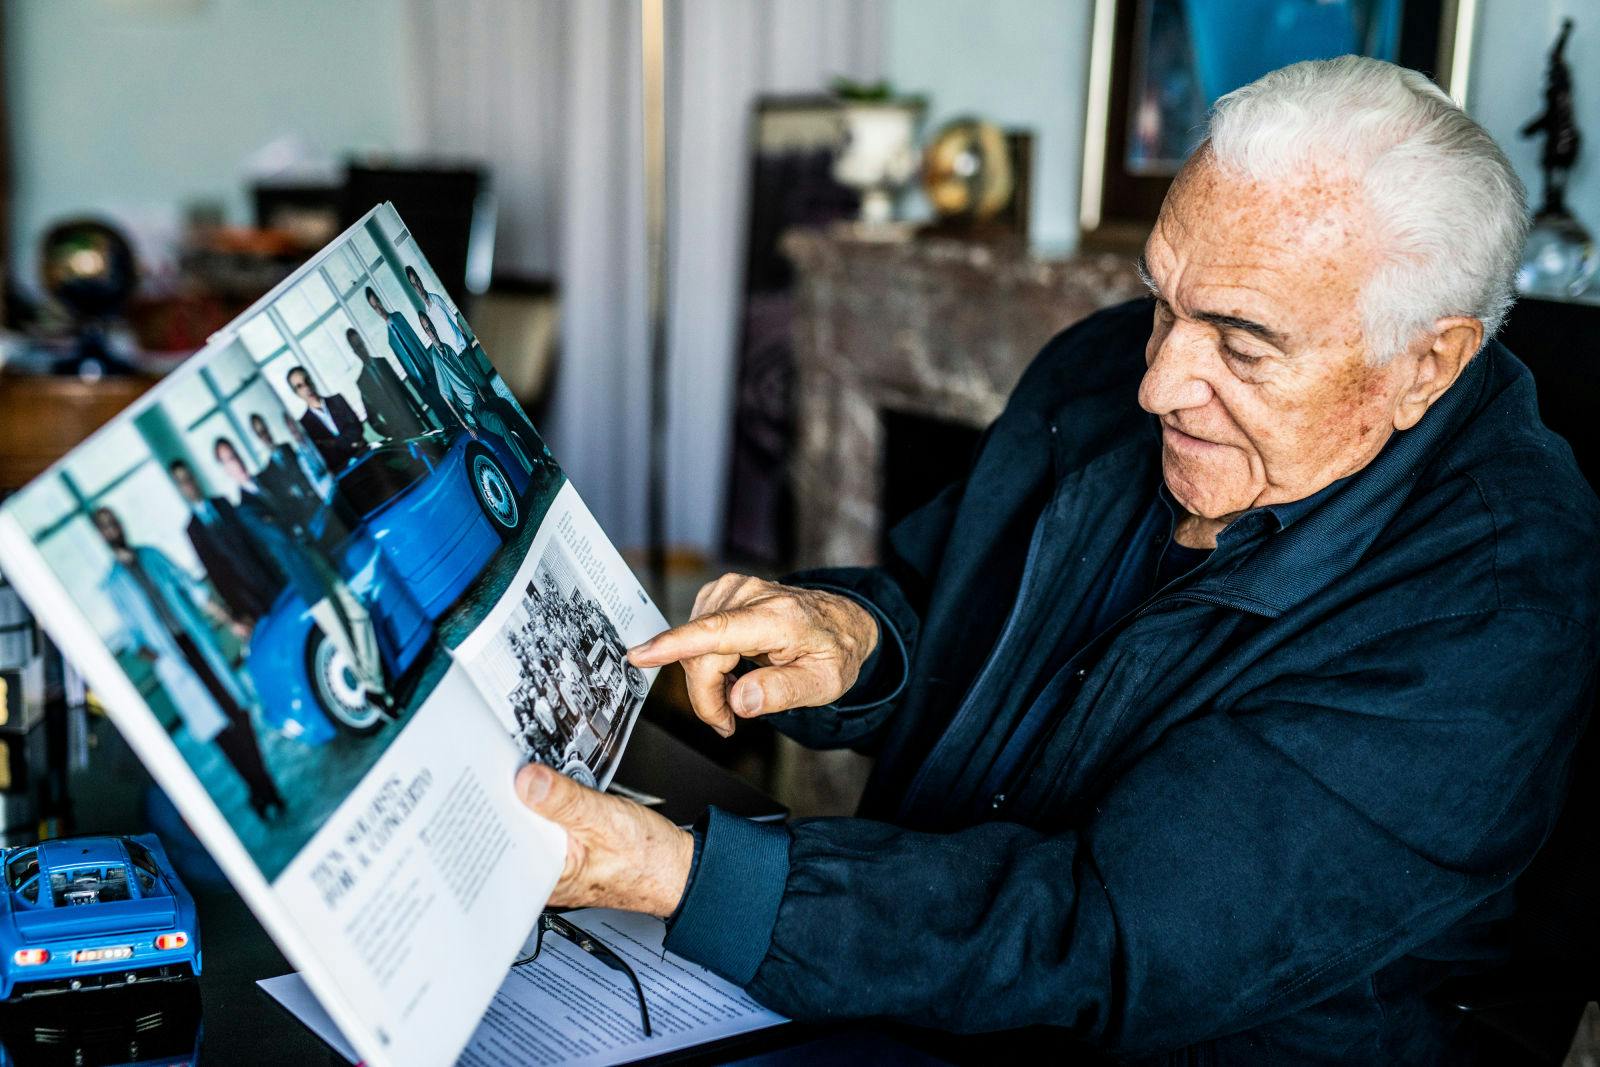 Romano Artioli dans sa résidence en Italie, partageant sa passion pour Bugatti.